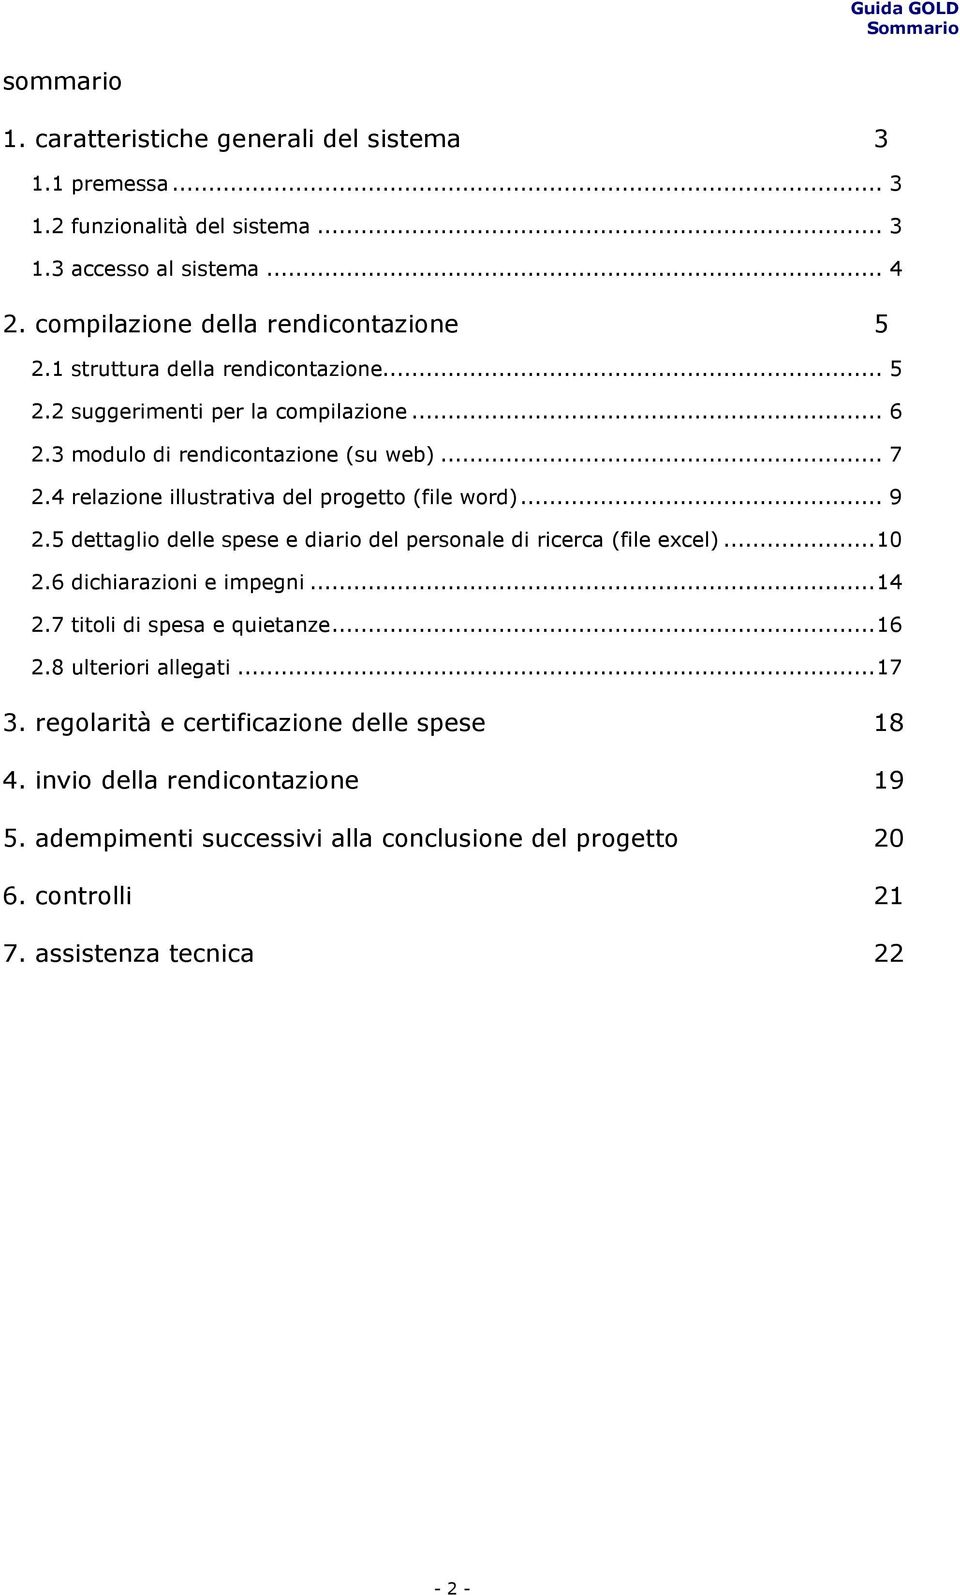 4 relazione illustrativa del progetto (file word)... 9 2.5 dettaglio delle spese e diario del personale di ricerca (file excel)...10 2.6 dichiarazioni e impegni...14 2.